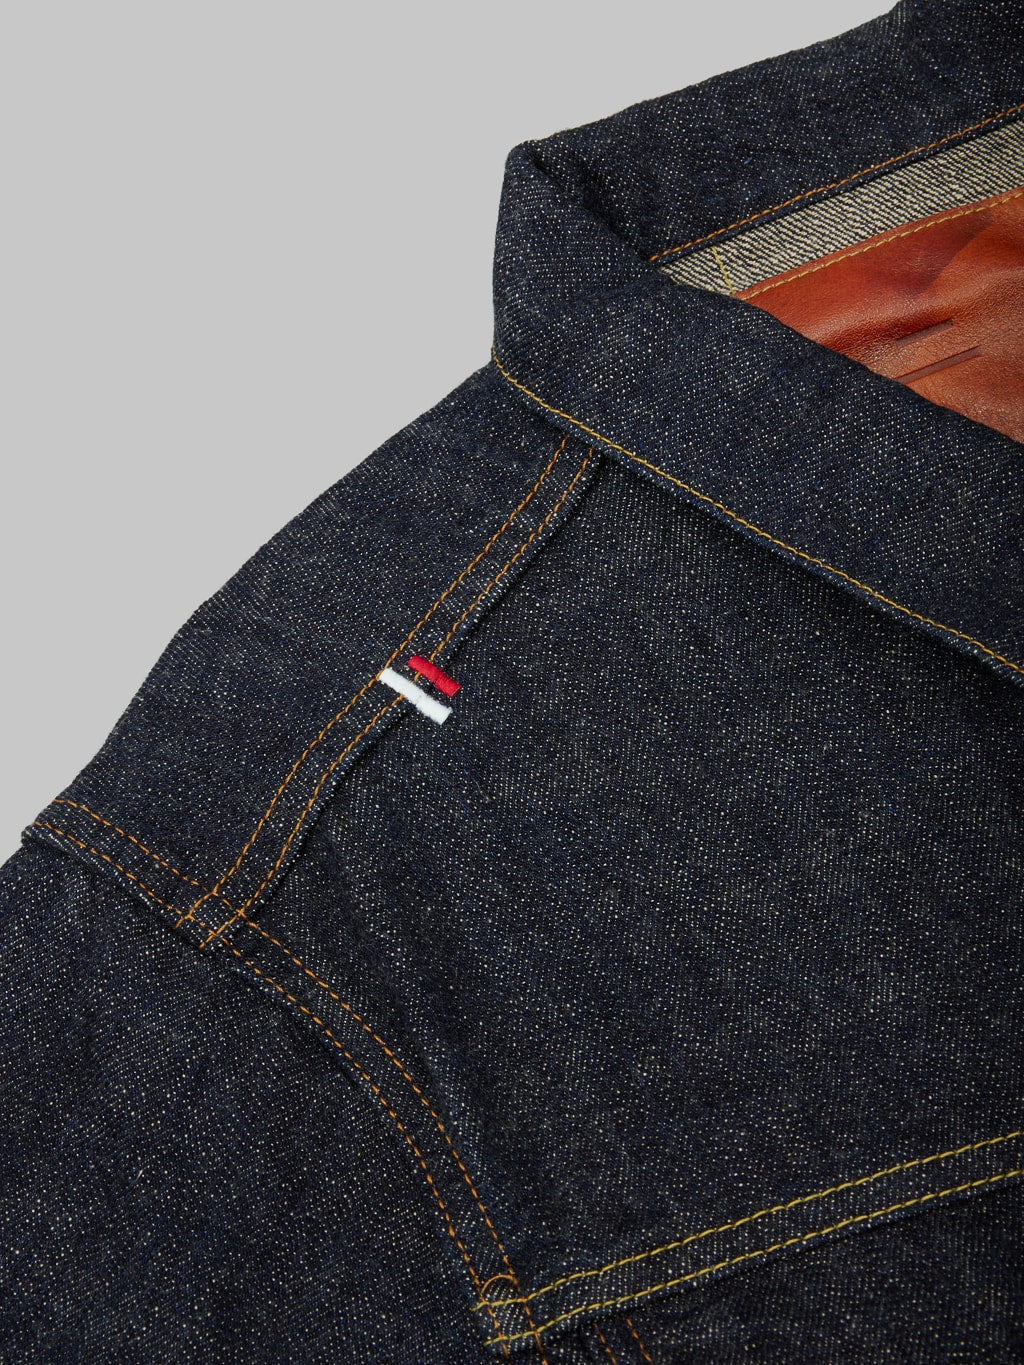 Tanuki zetto benkei type III jacket brand logo embroided